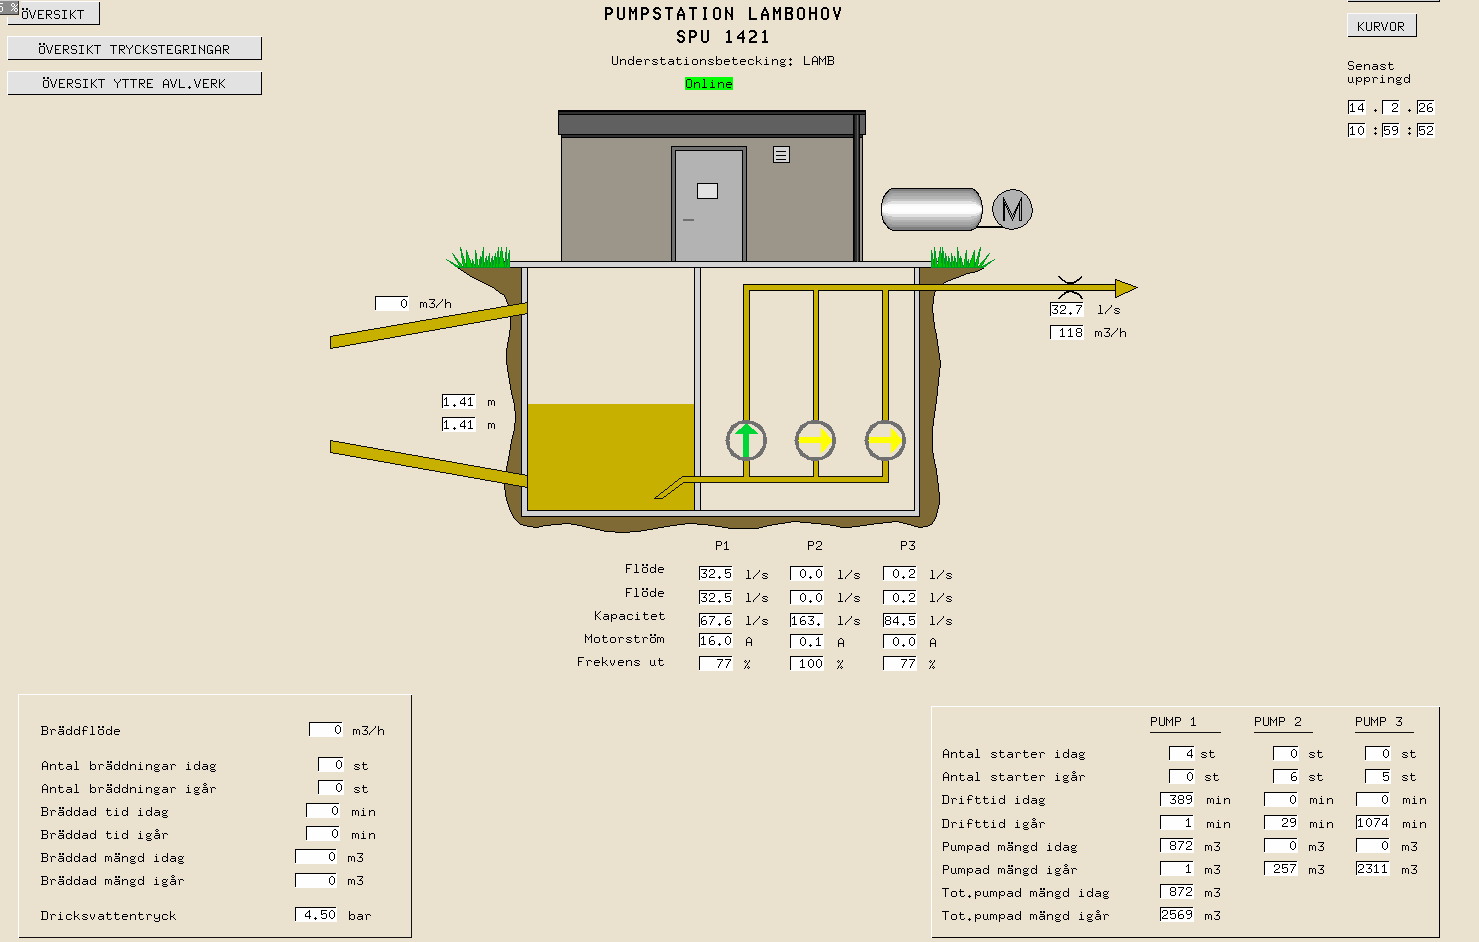 Figur 11 Bild från driftövervakningssystemet Cactus som visar en översikt av de spillvattenpumpstationer mm som